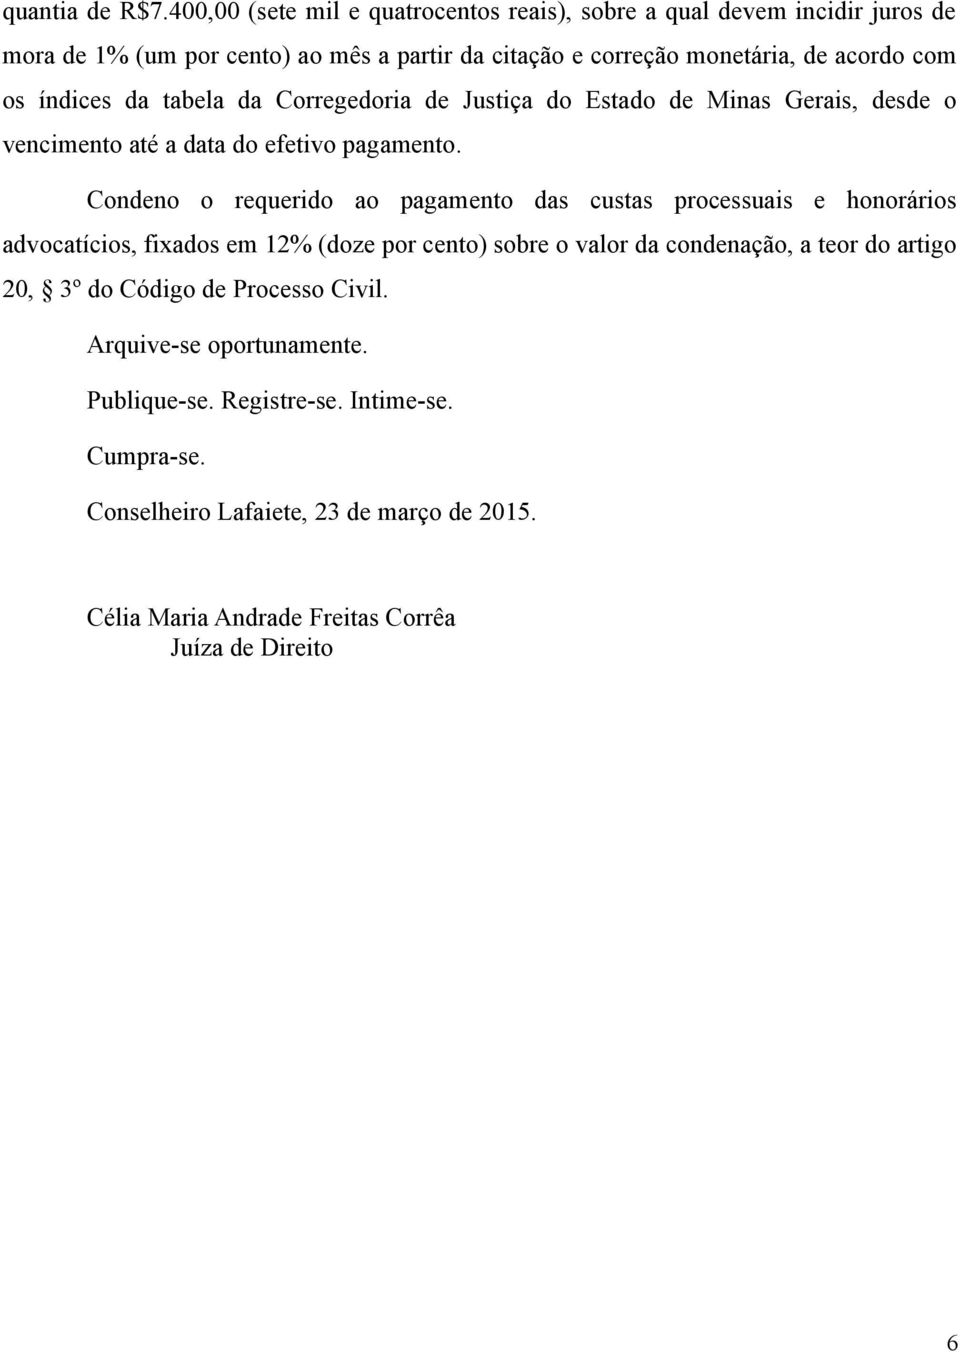 índices da tabela da Corregedoria de Justiça do Estado de Minas Gerais, desde o vencimento até a data do efetivo pagamento.